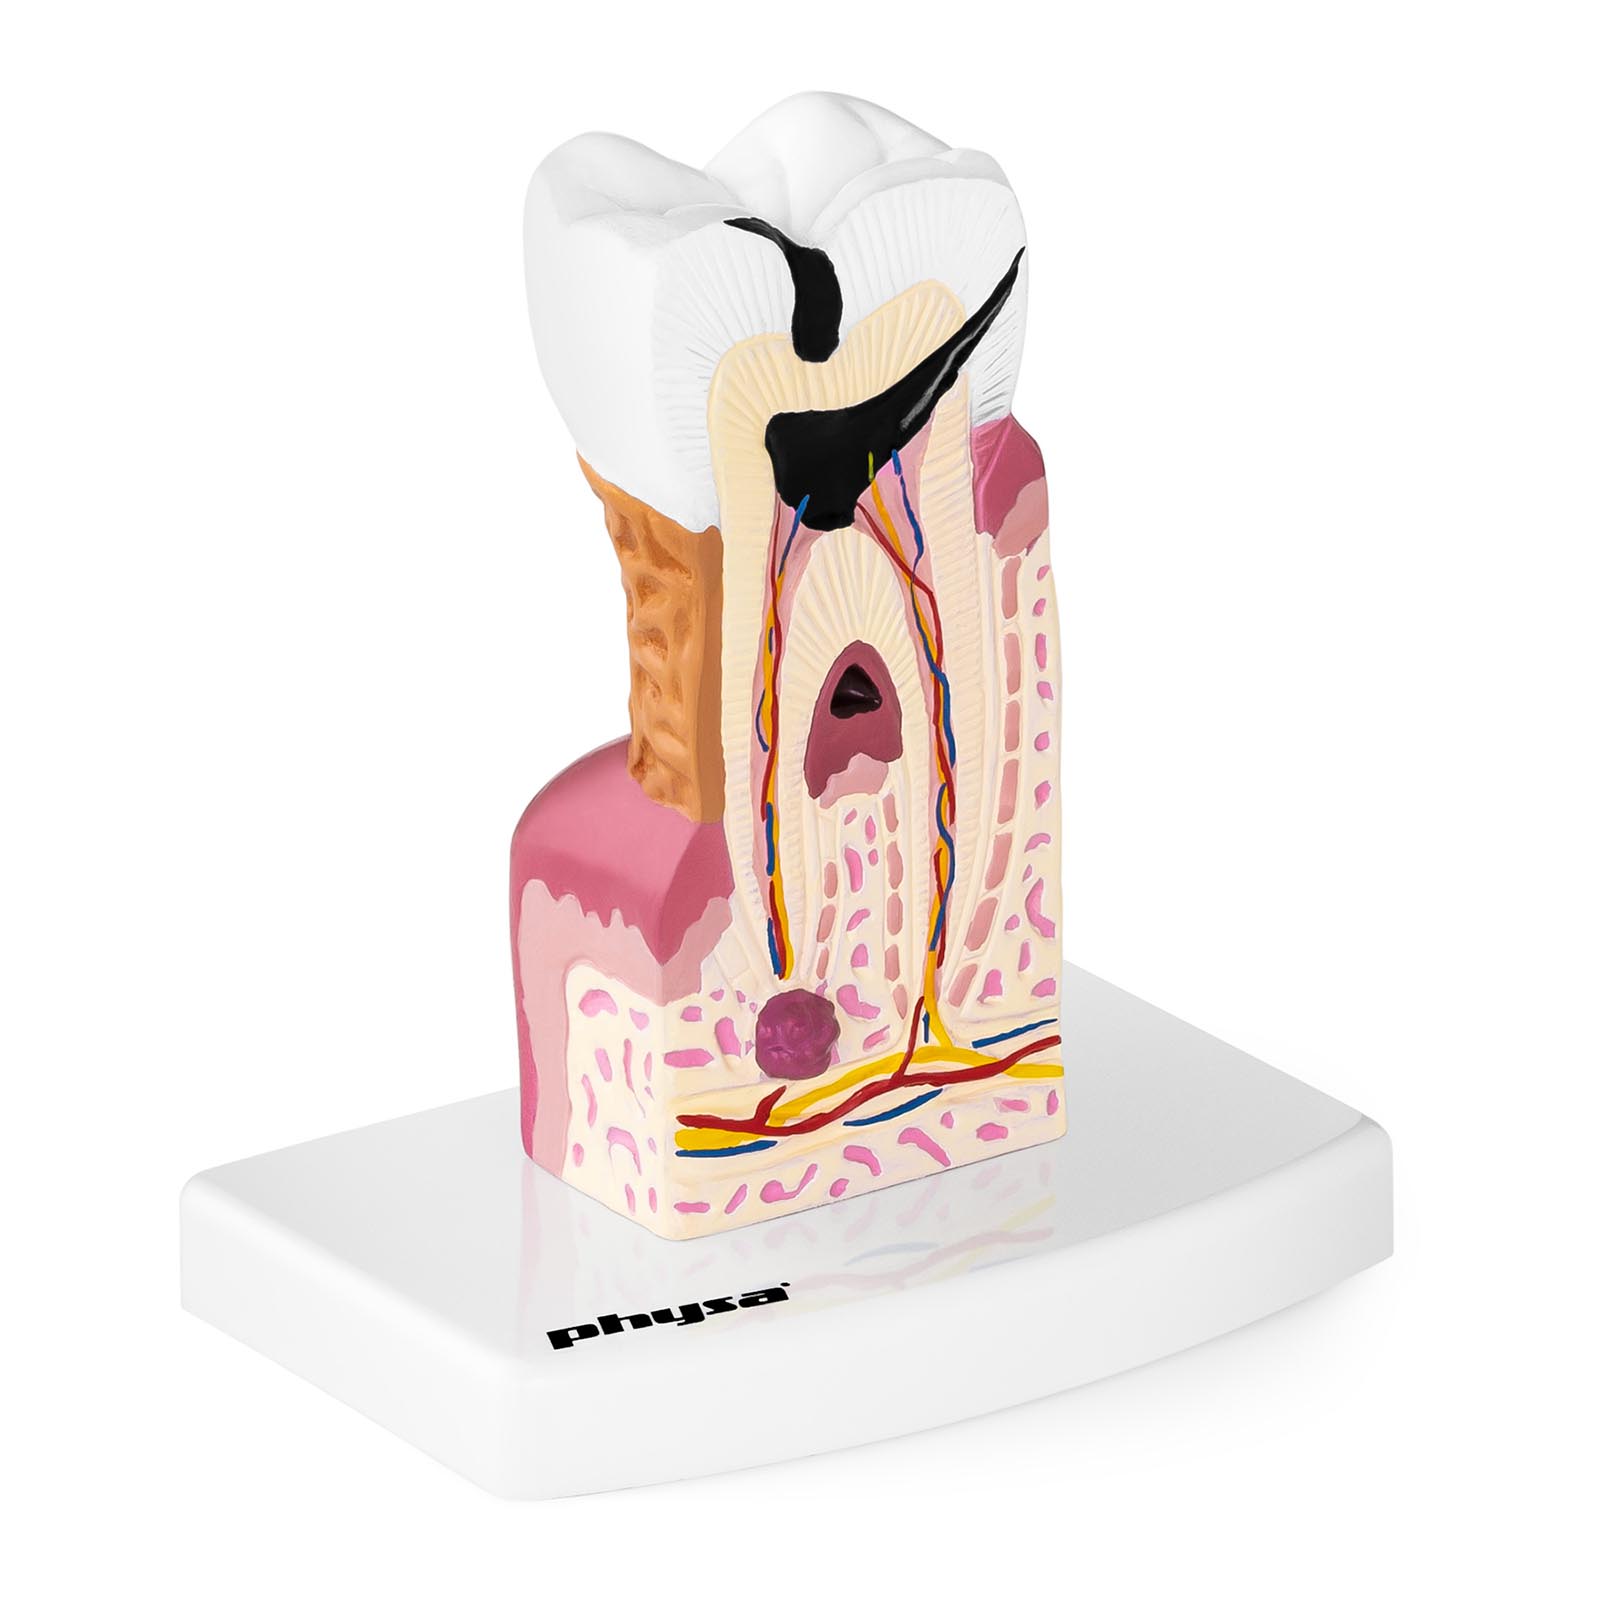 Modelo de diente - molar enfermo